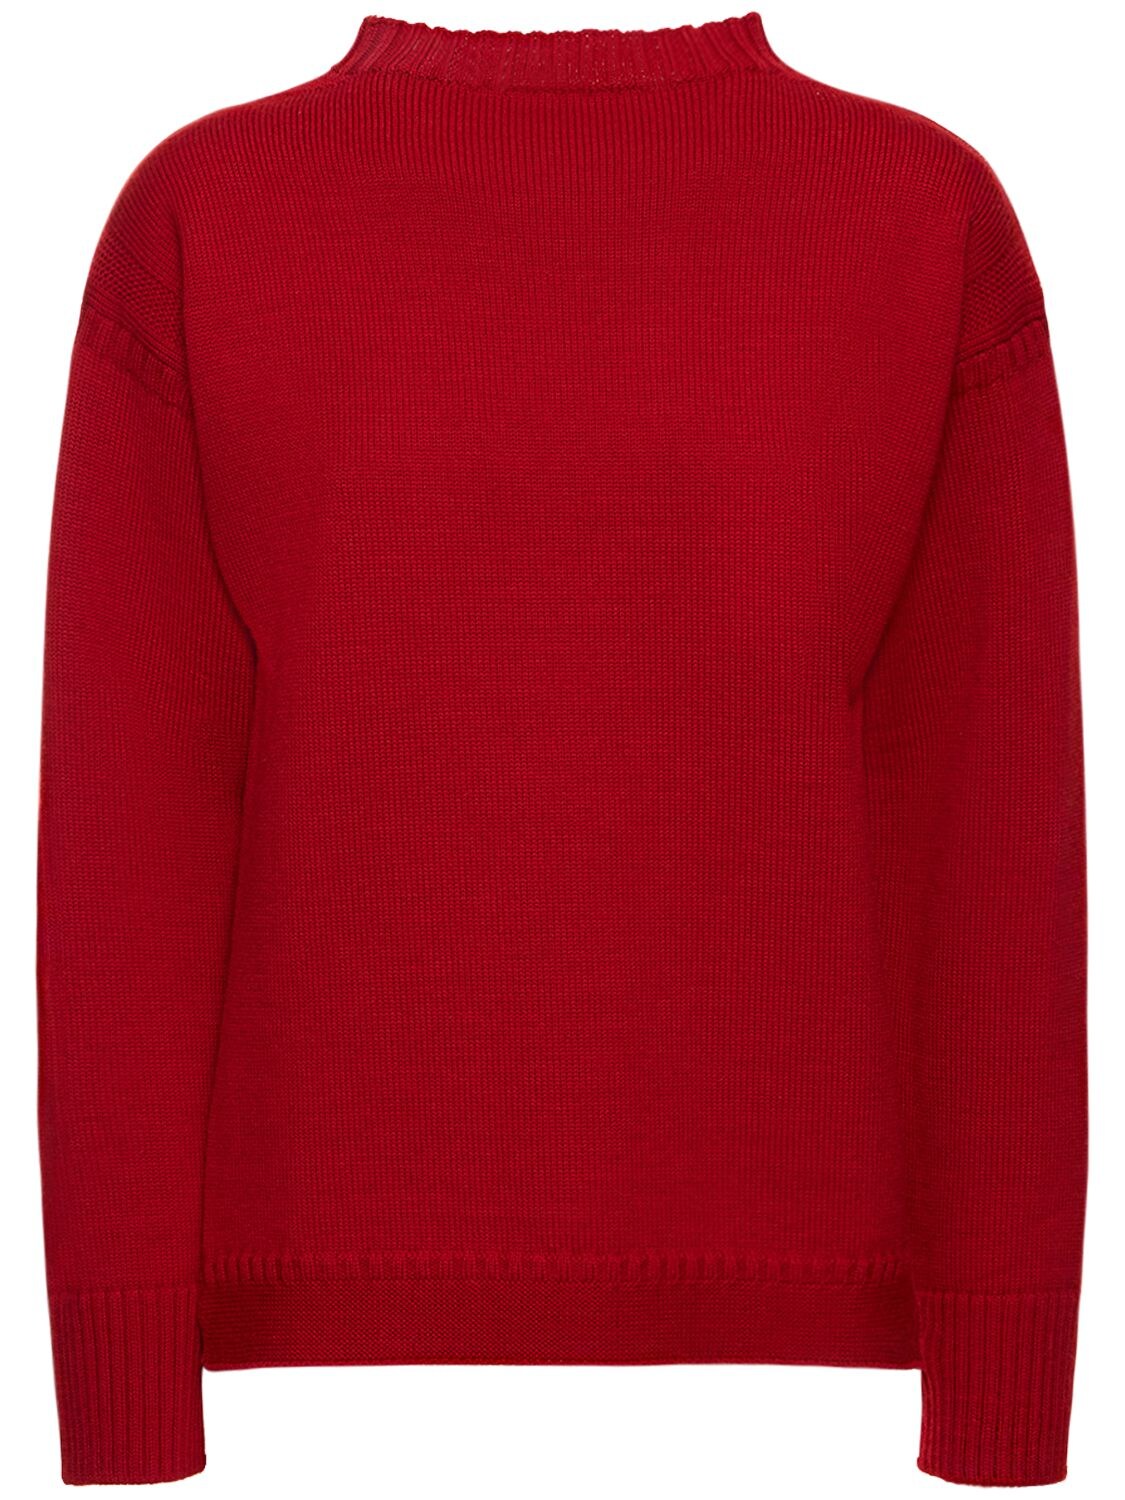 Wool Knit Sweater – WOMEN > CLOTHING > KNITWEAR